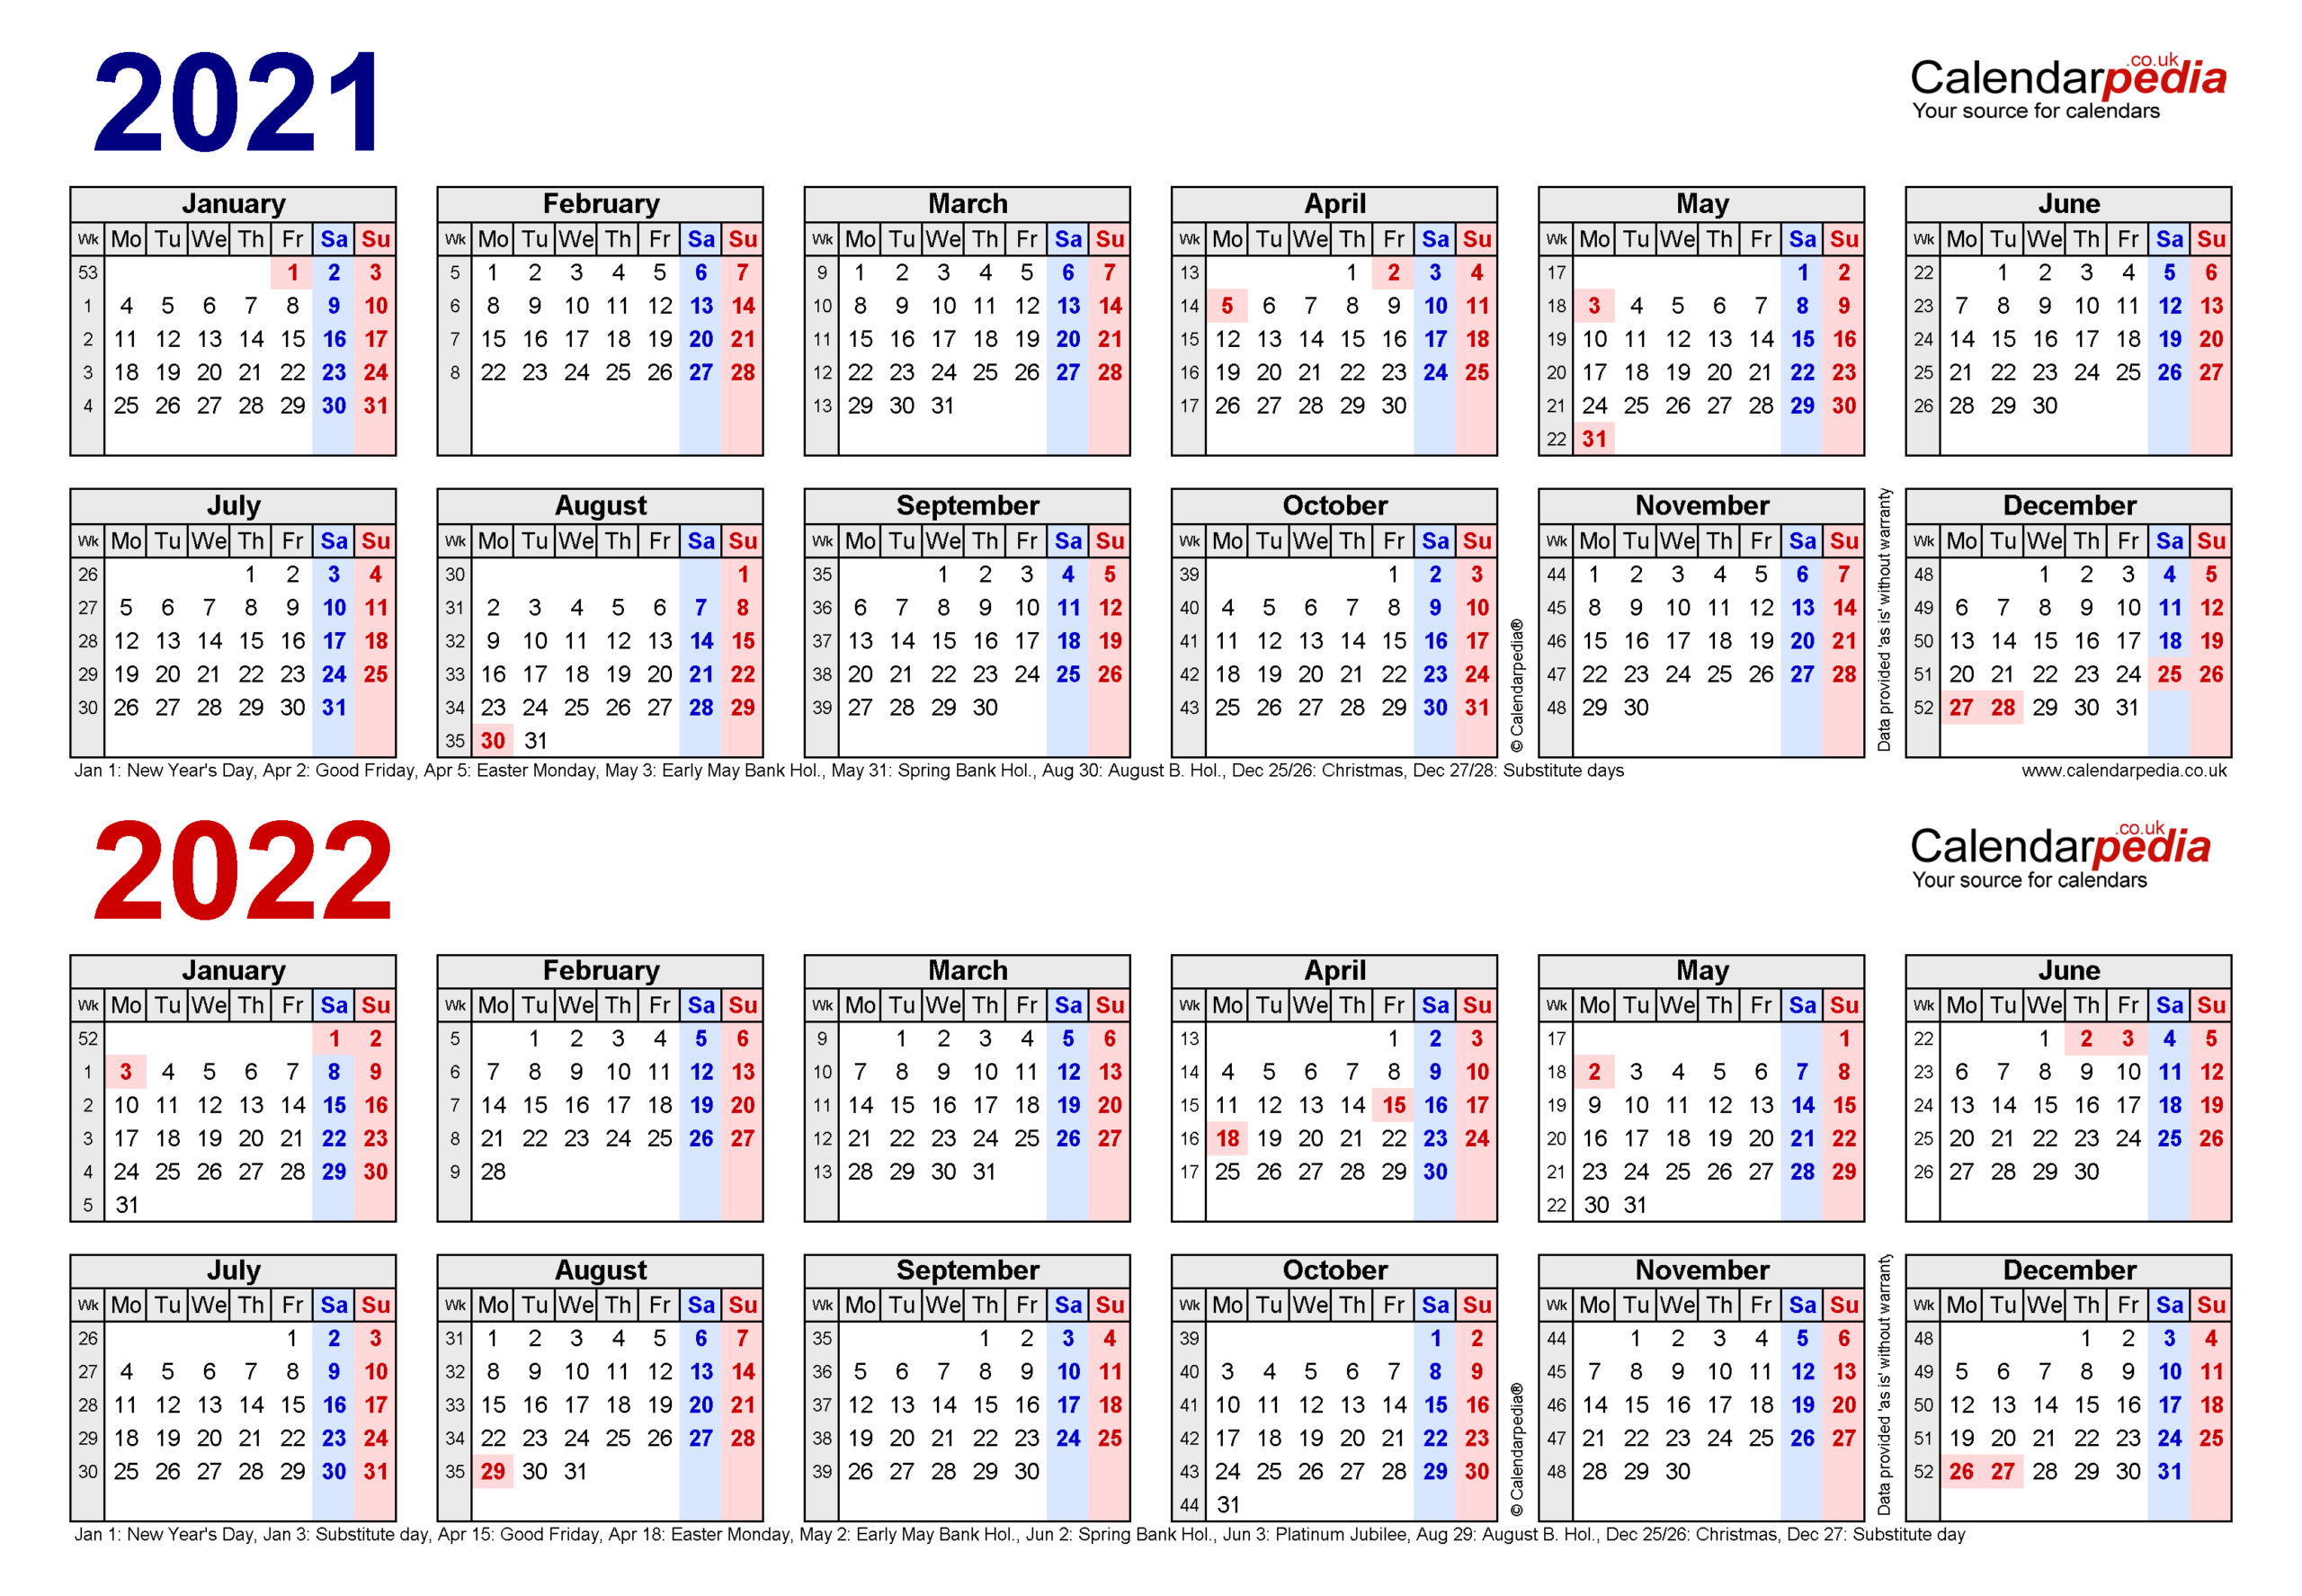 Get August 22 2022 Calendar